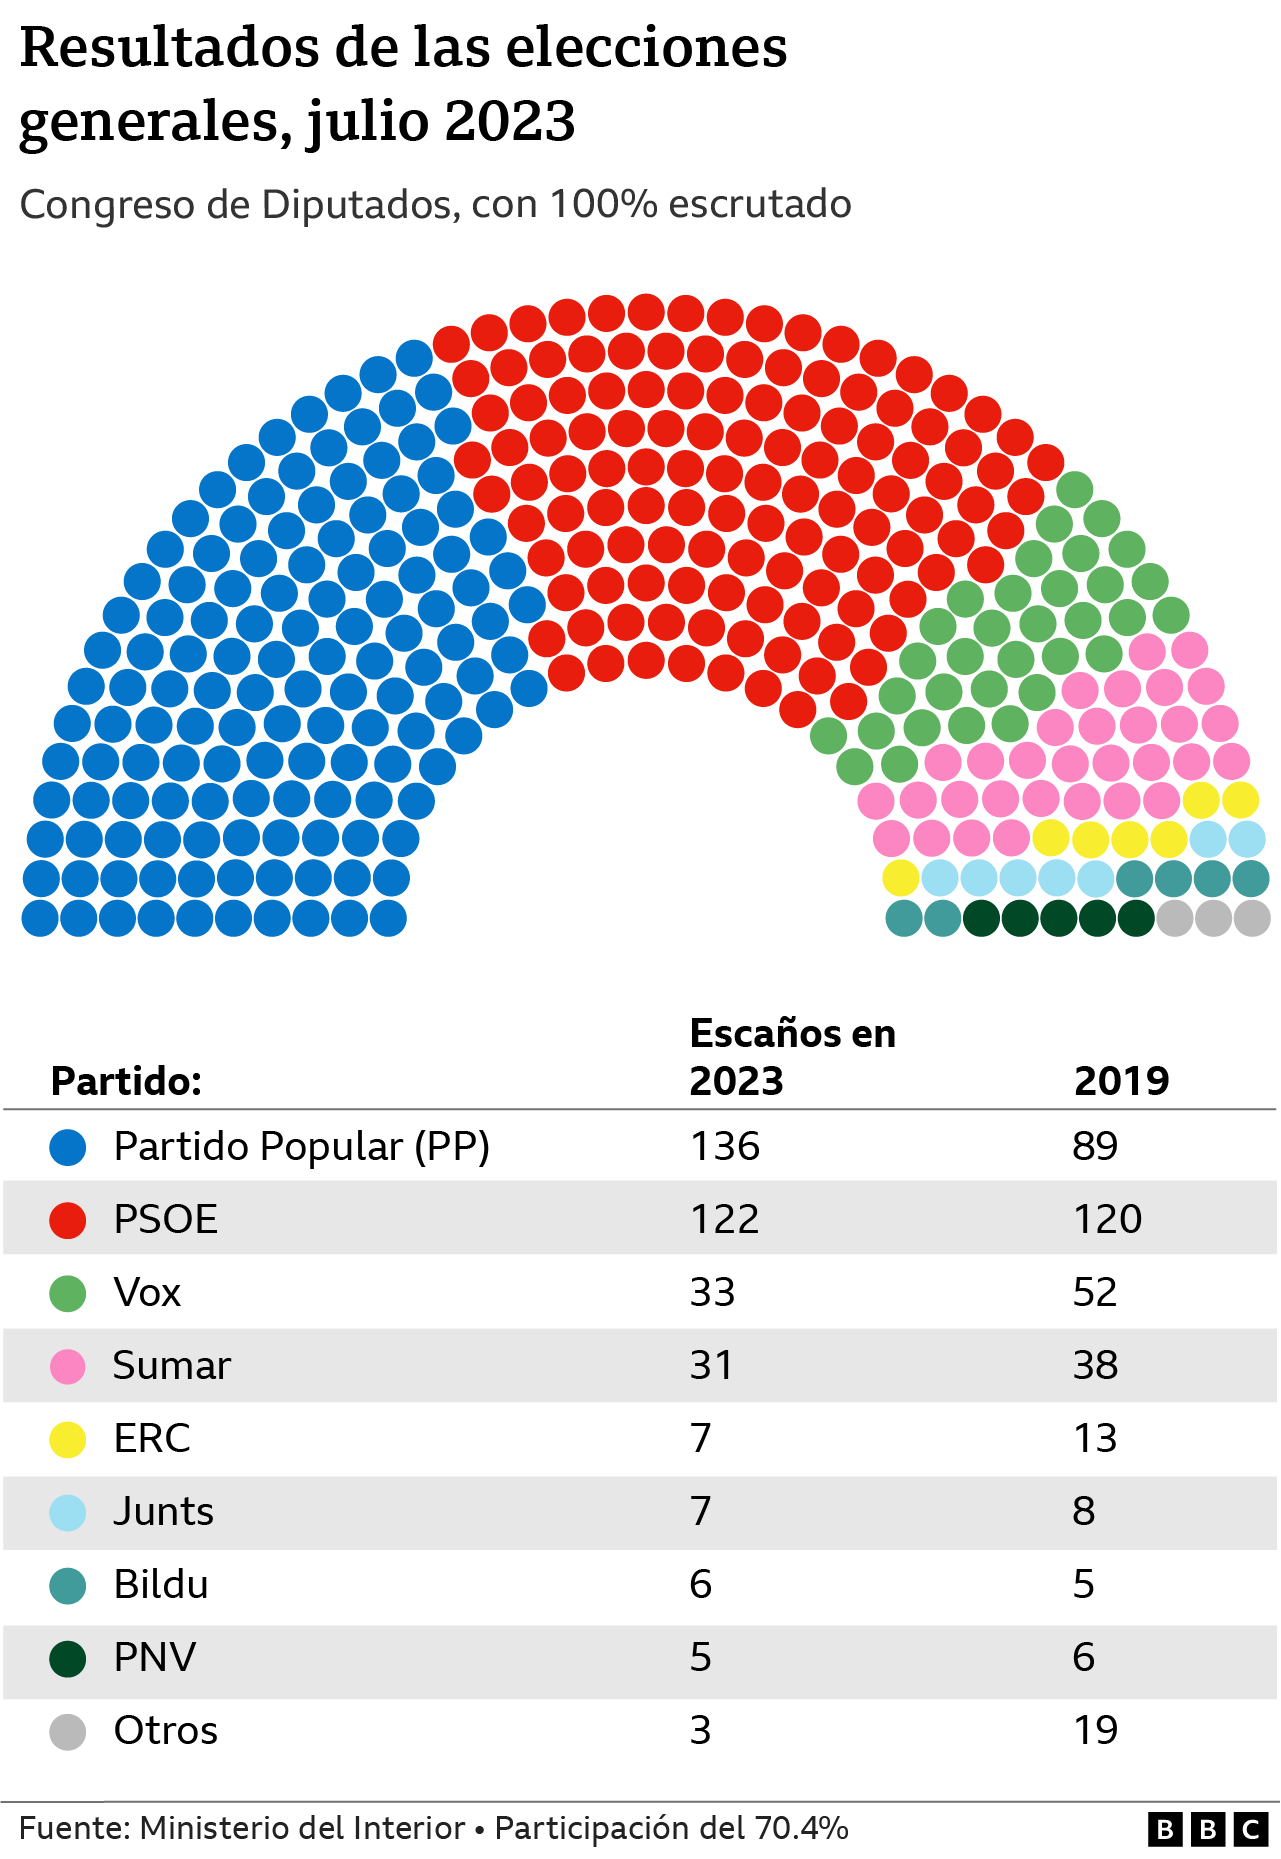 Gráfico que muestra los escaños obtenidos por cada partido en las elecciones generales de España en julio de 2023